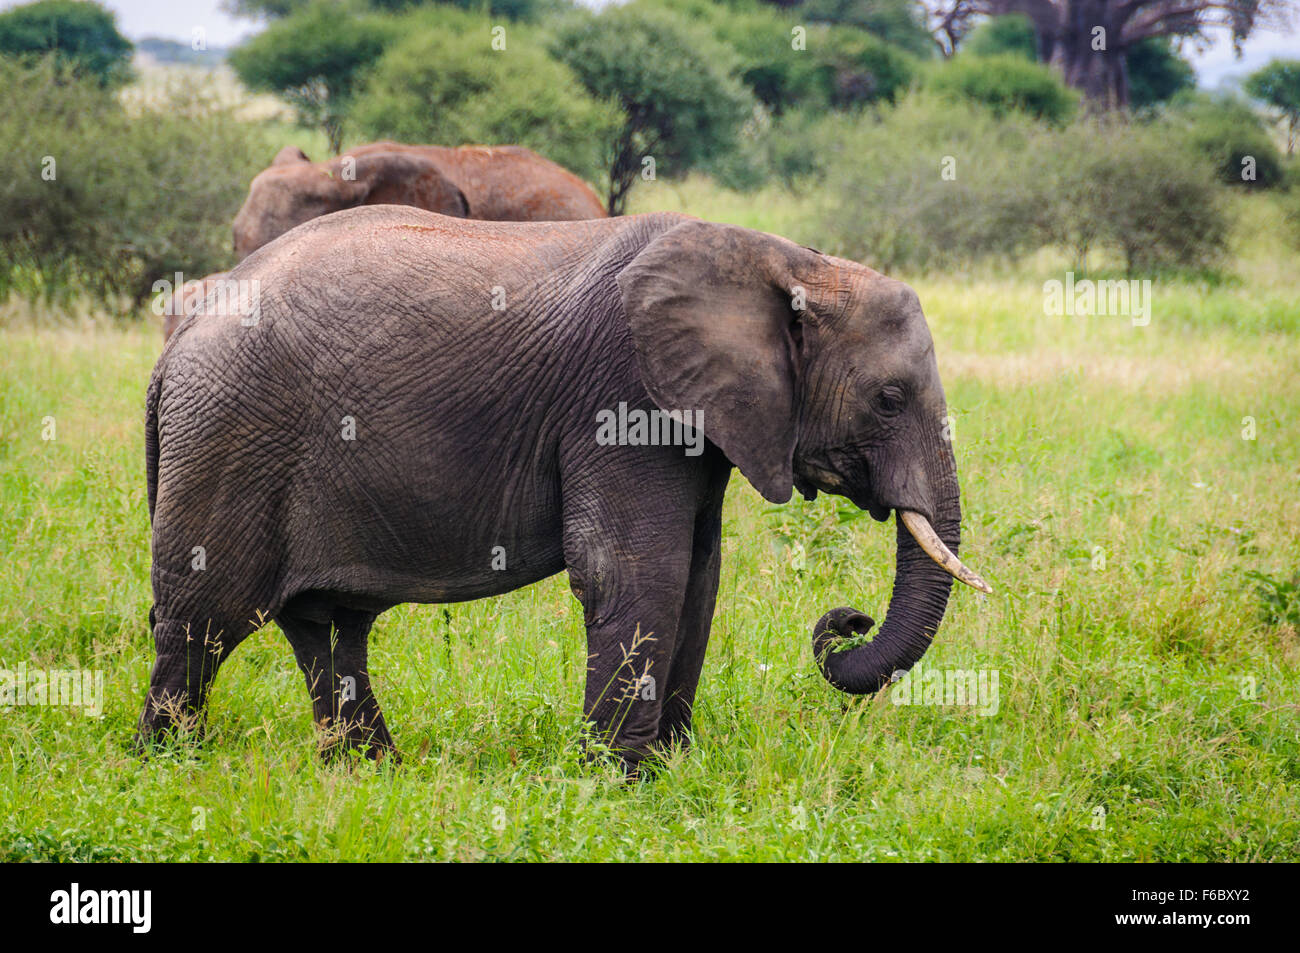 Sad elephant in the Tarangire National Park, Tanzania Stock Photo